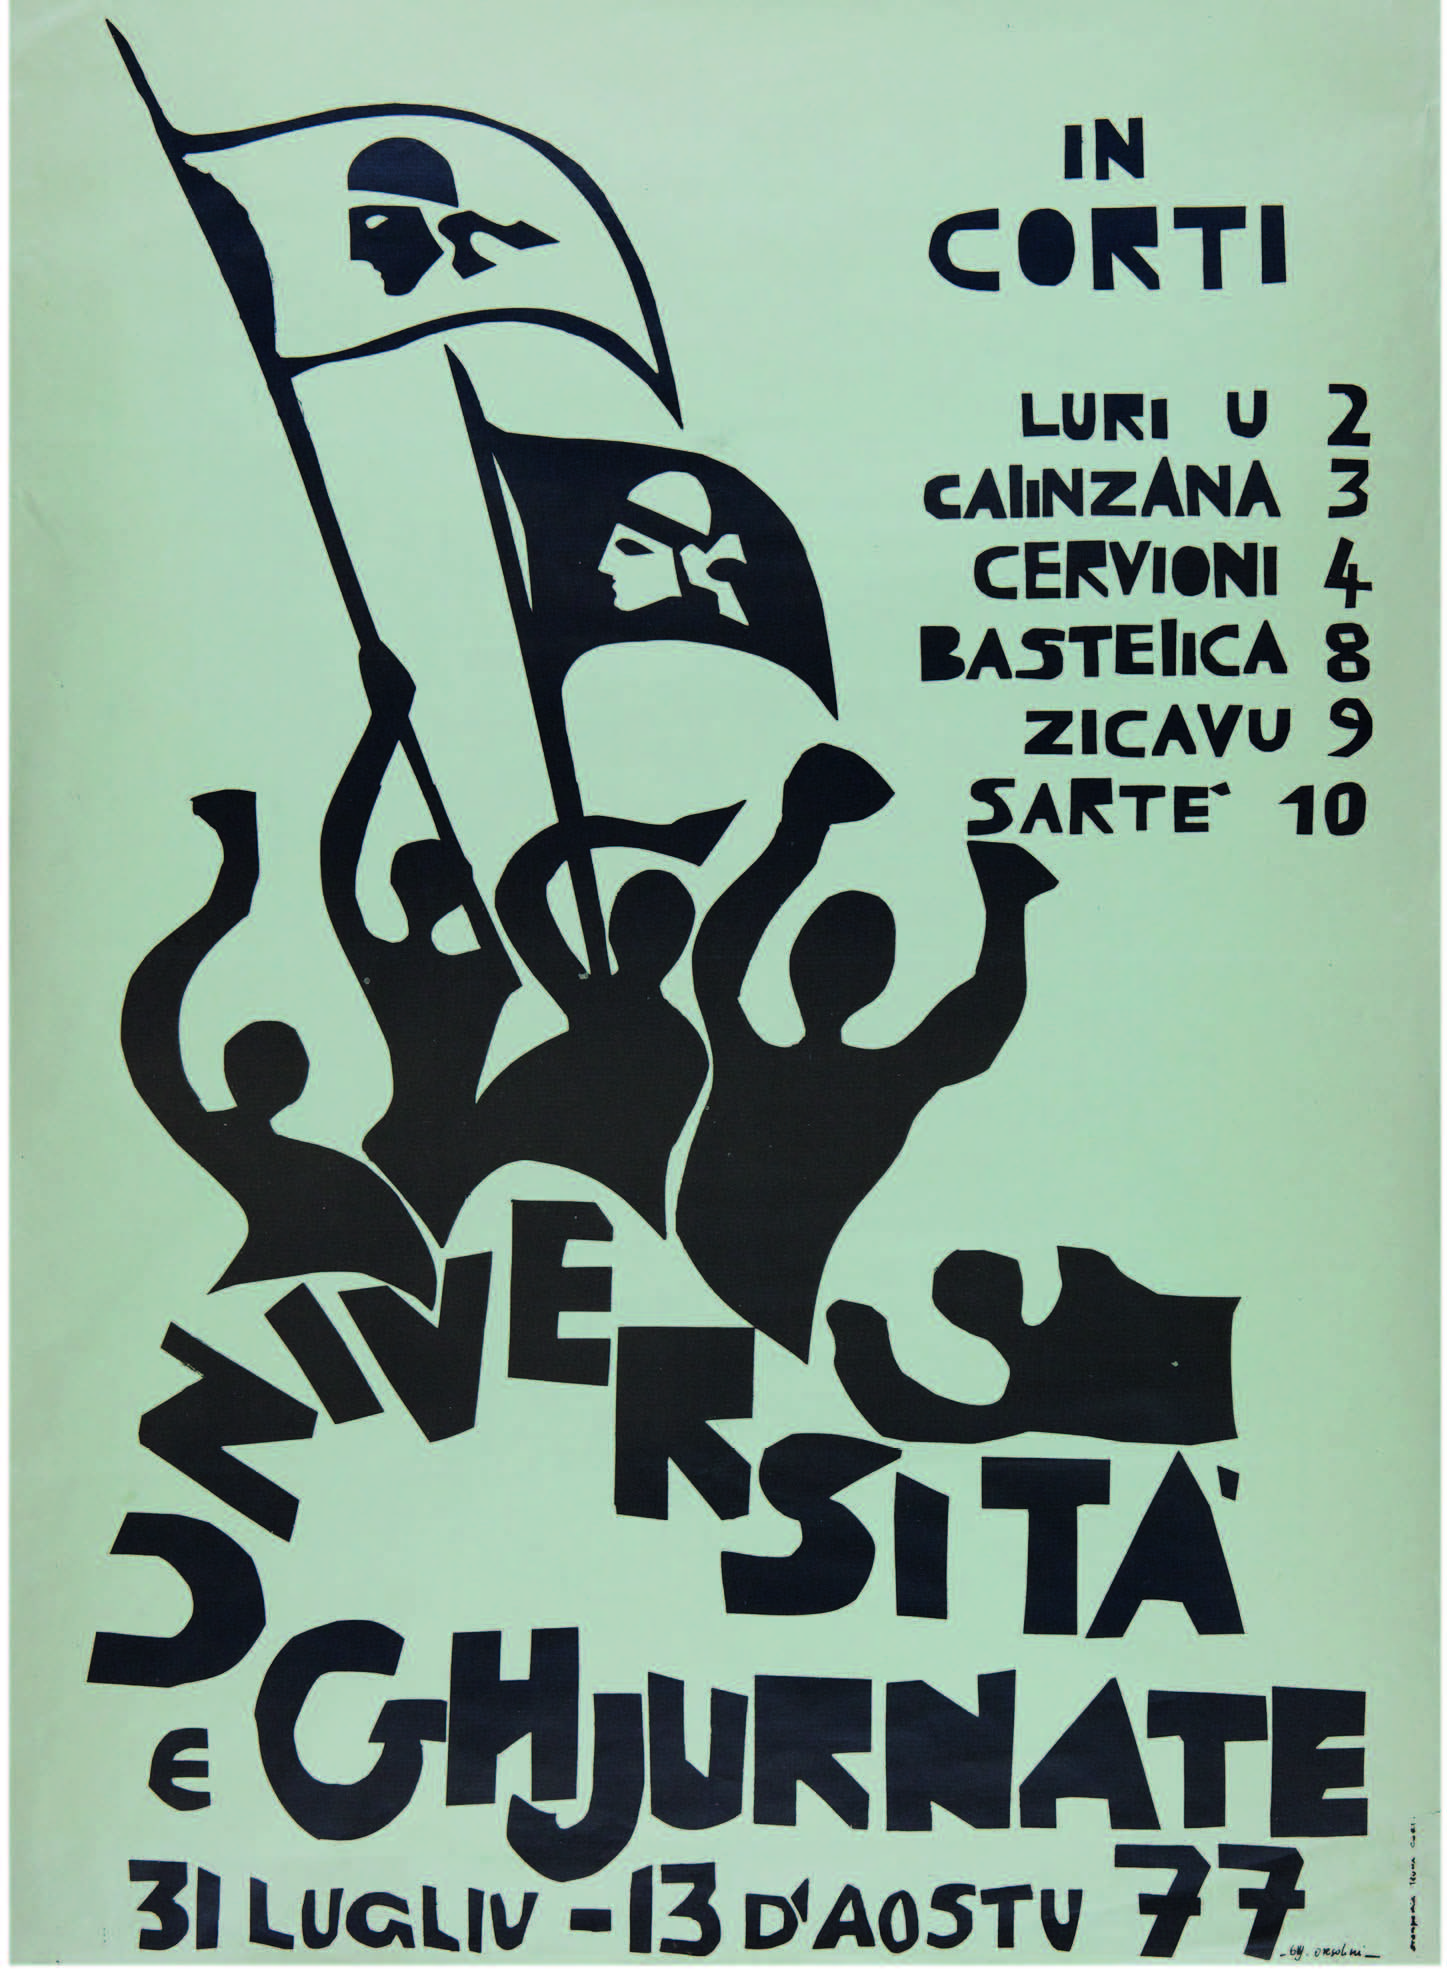 Ghjiseppu Orsolini / Fondu Carlu Castellani / 1977 / 46 x 64cm